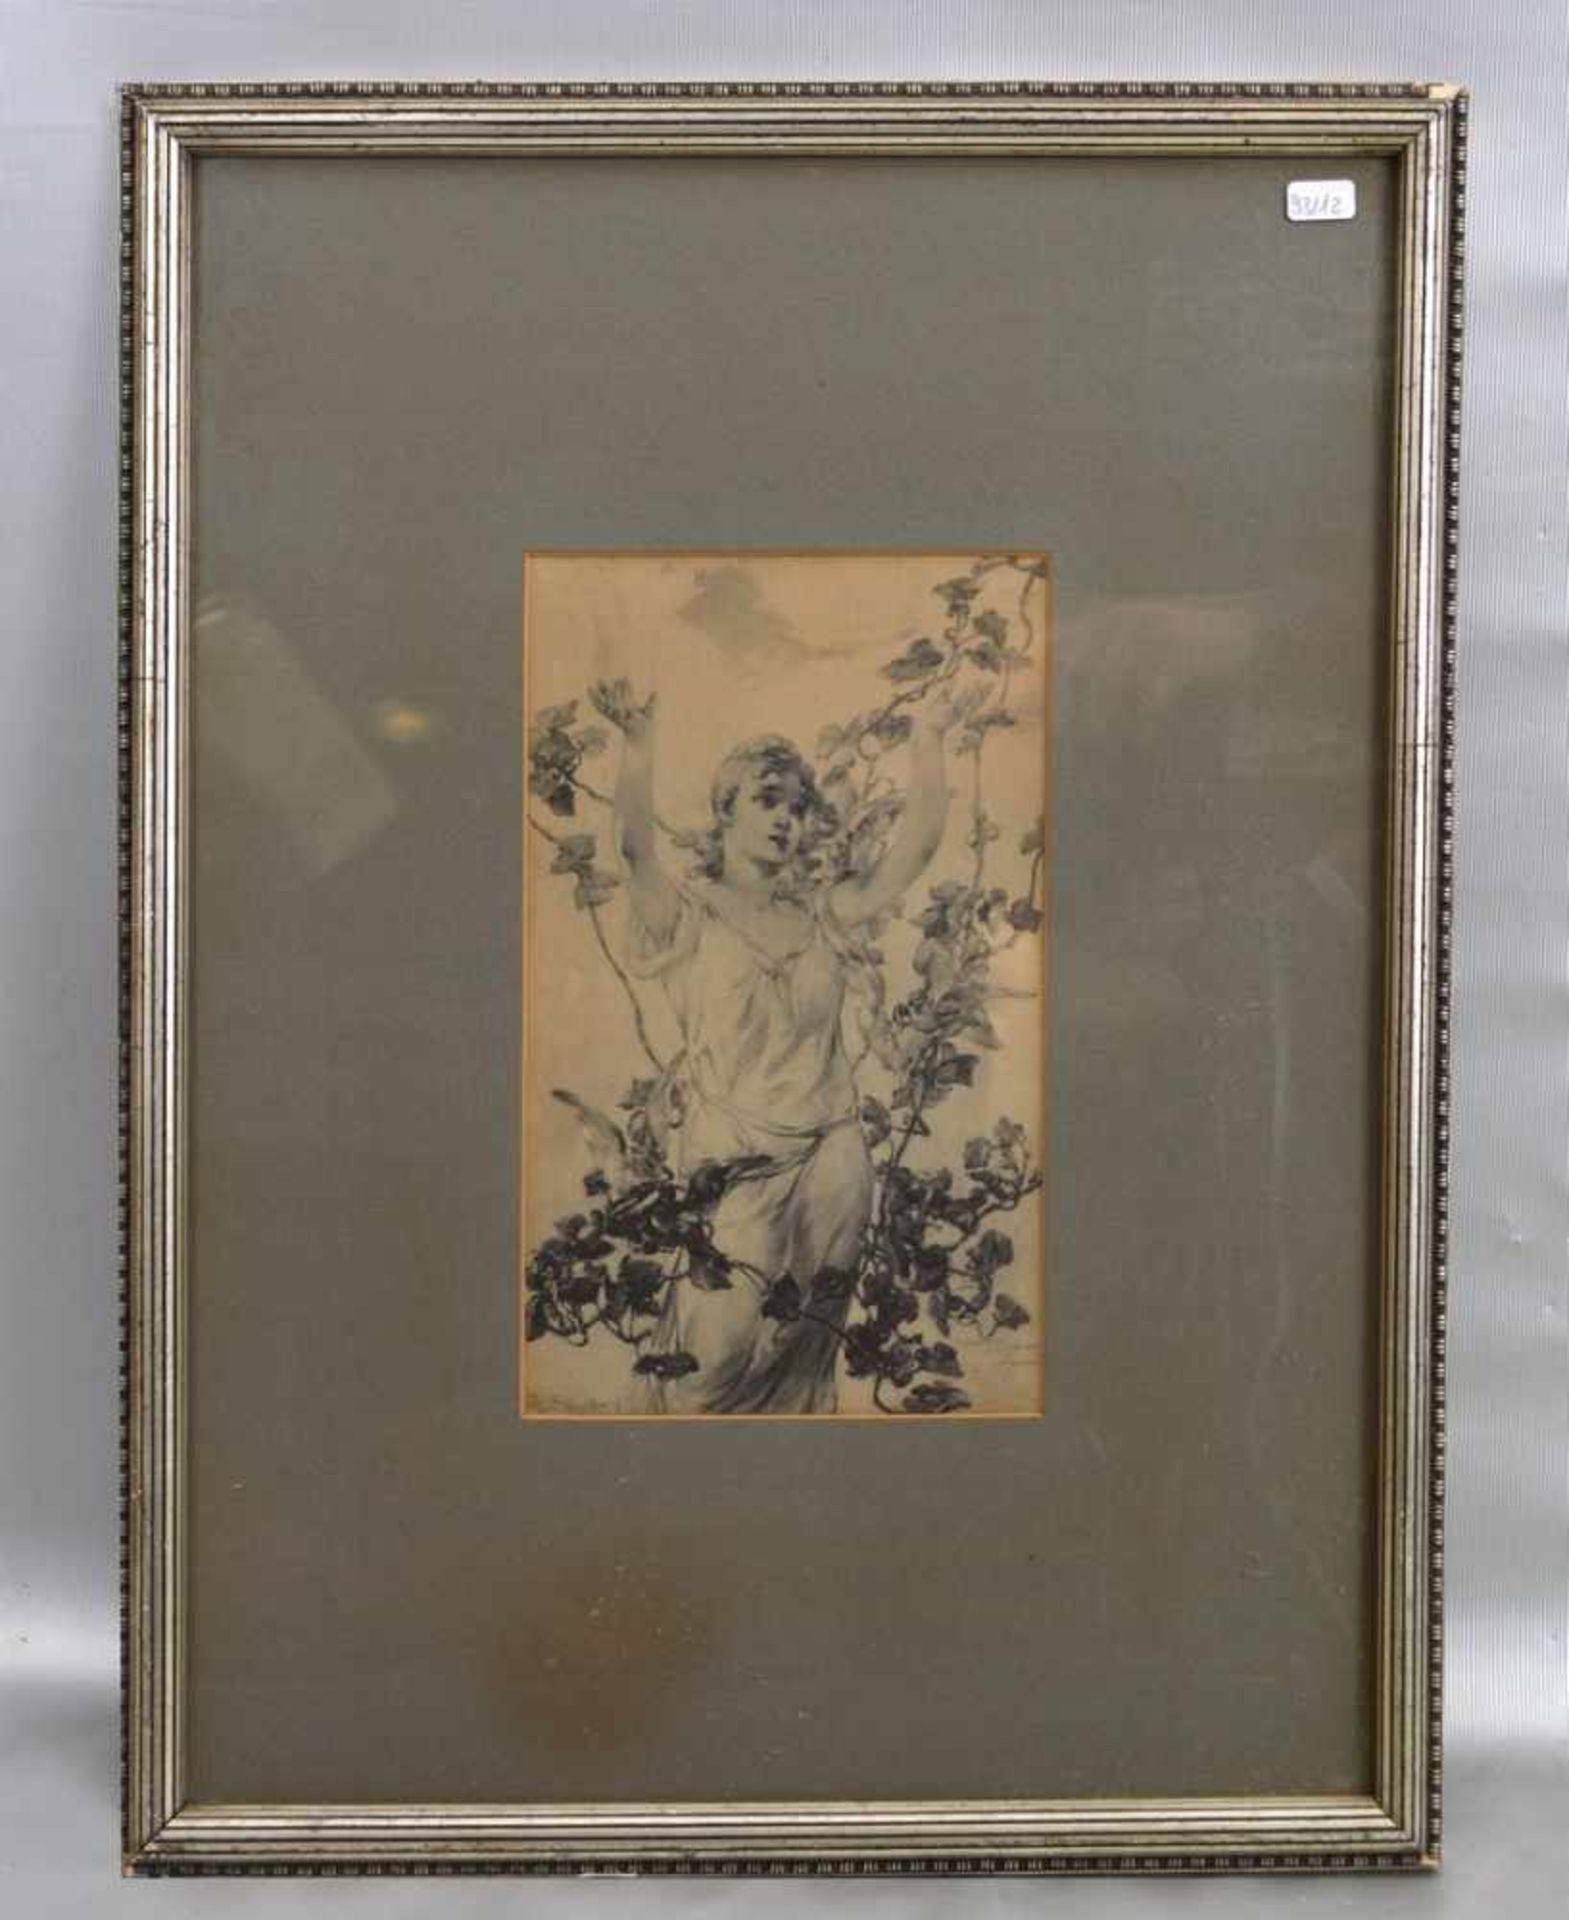 BleistiftzeichnungMädchen mit Ranke und Vögeln, u.l.sign., u.r. beschriftet und dat., 14 X 23 cm, im